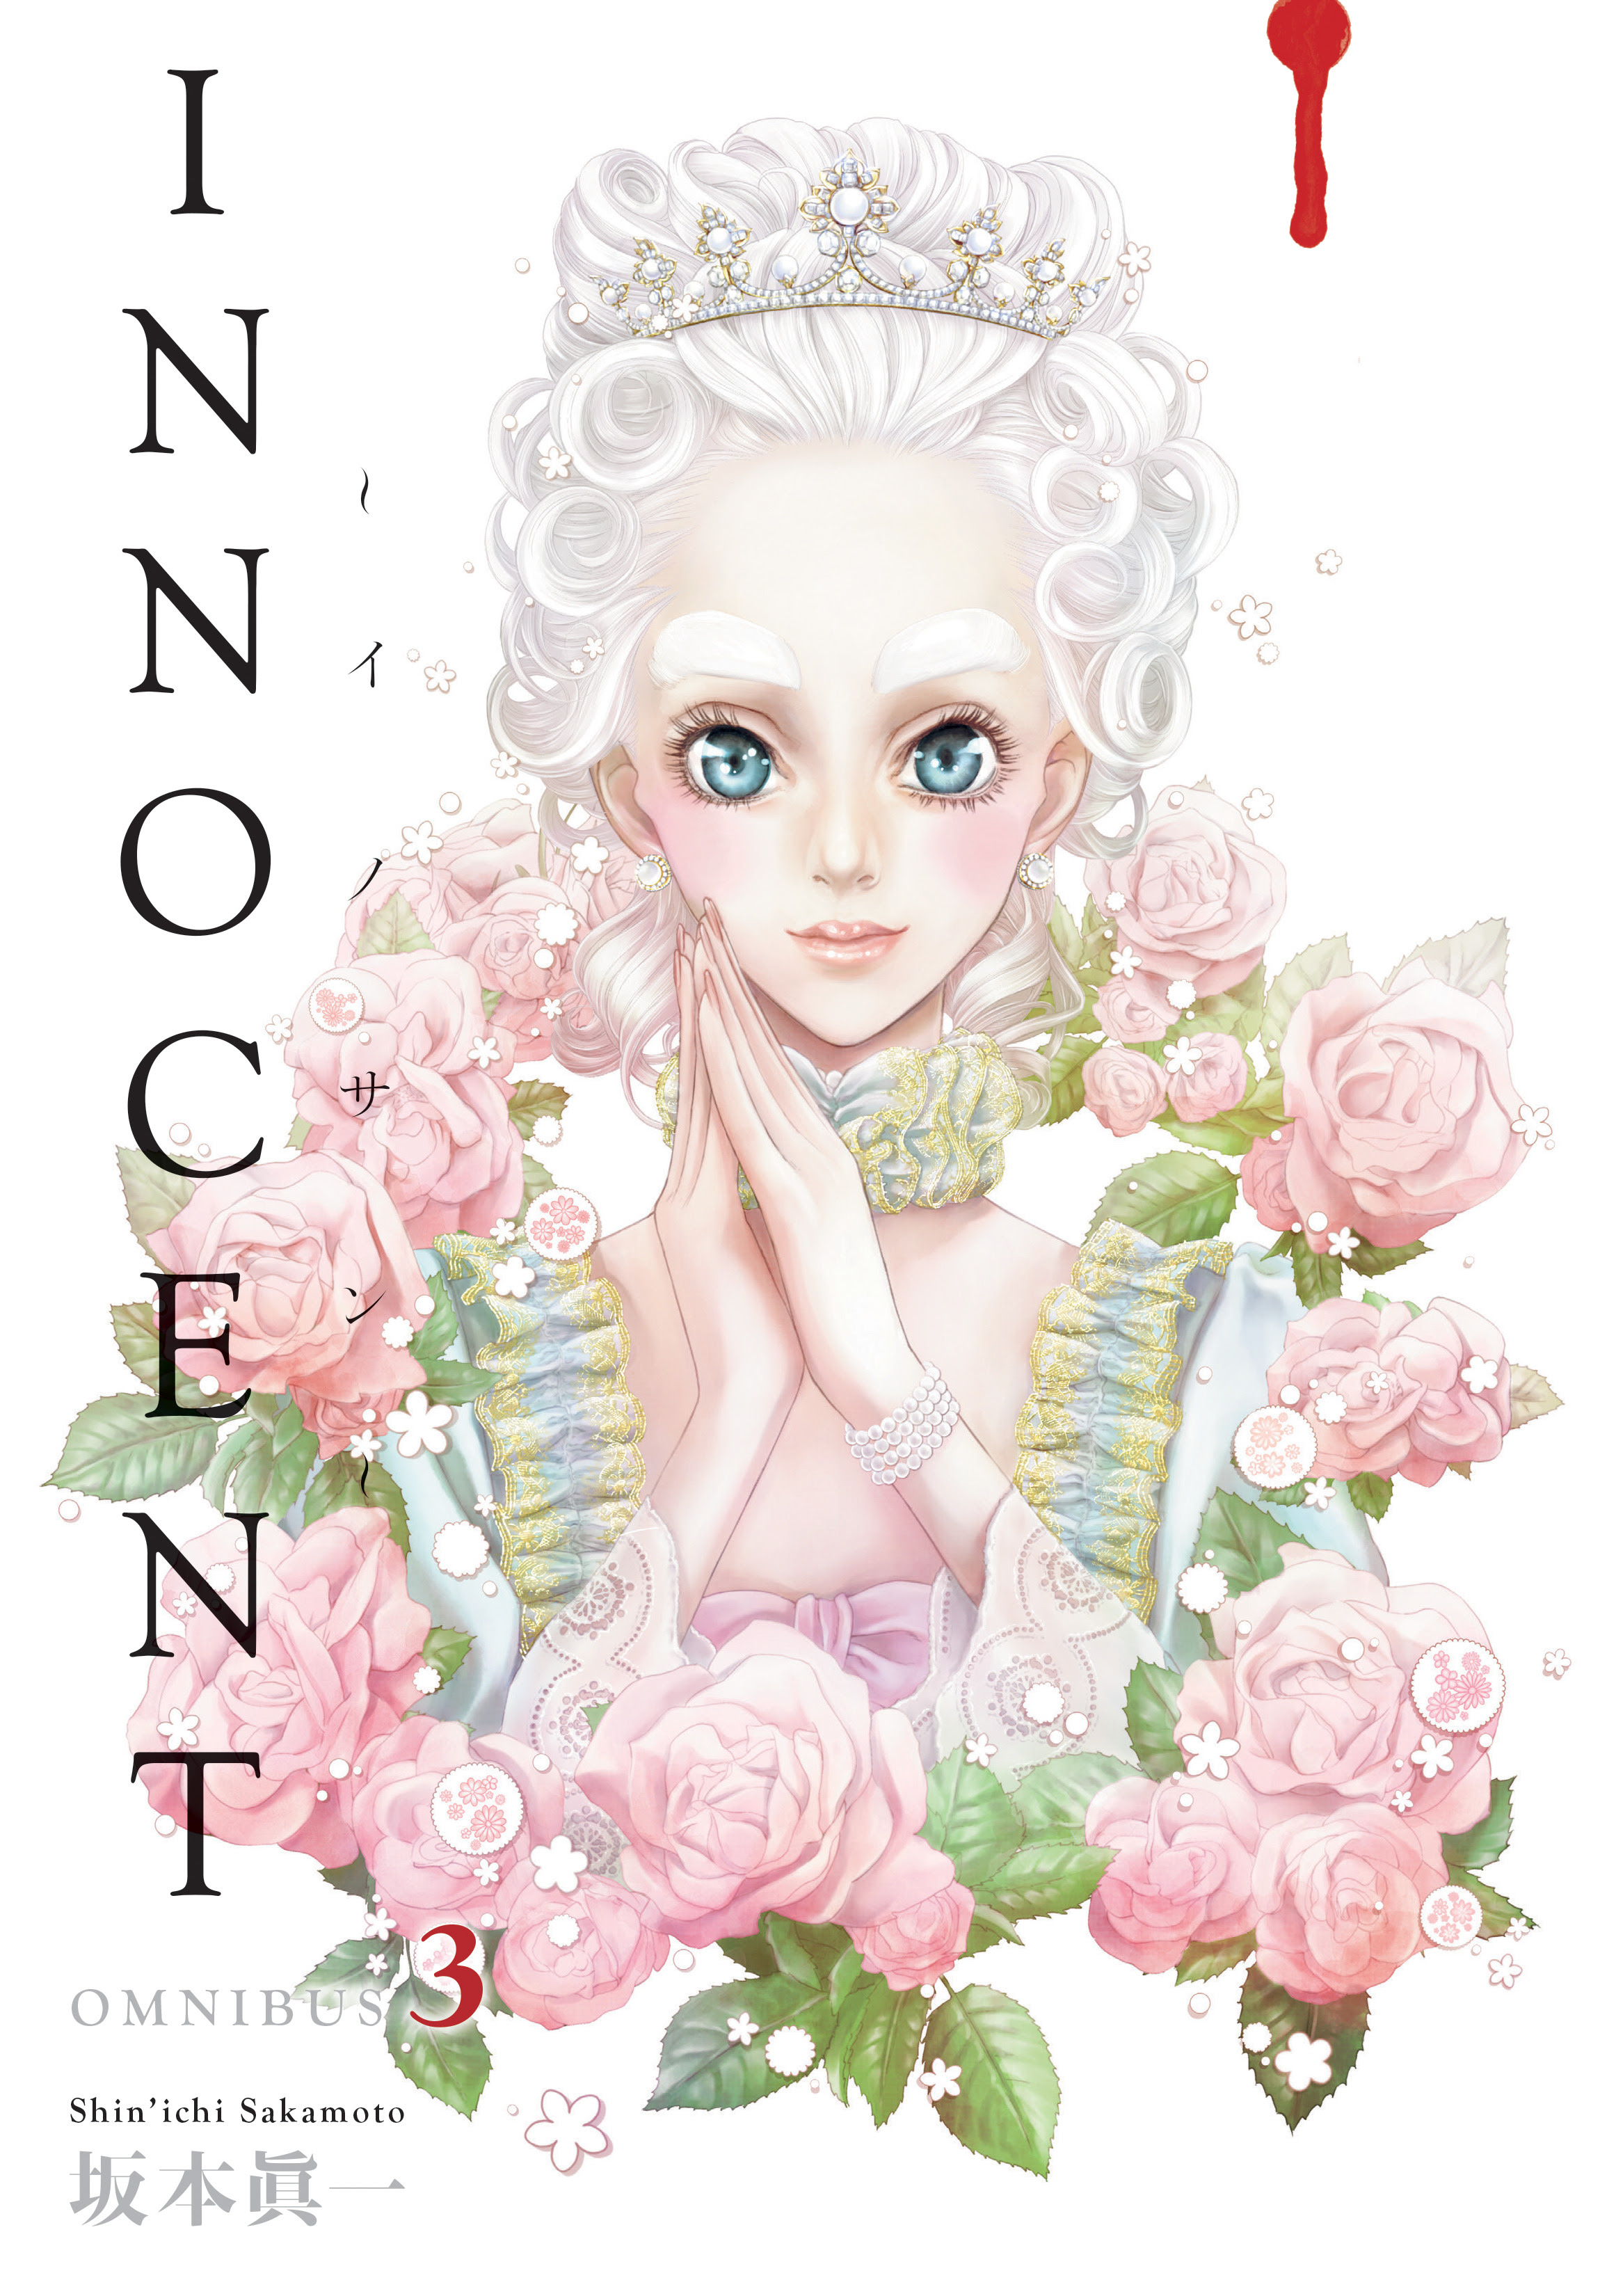 Innocent Omnibus Volume 3 Cover